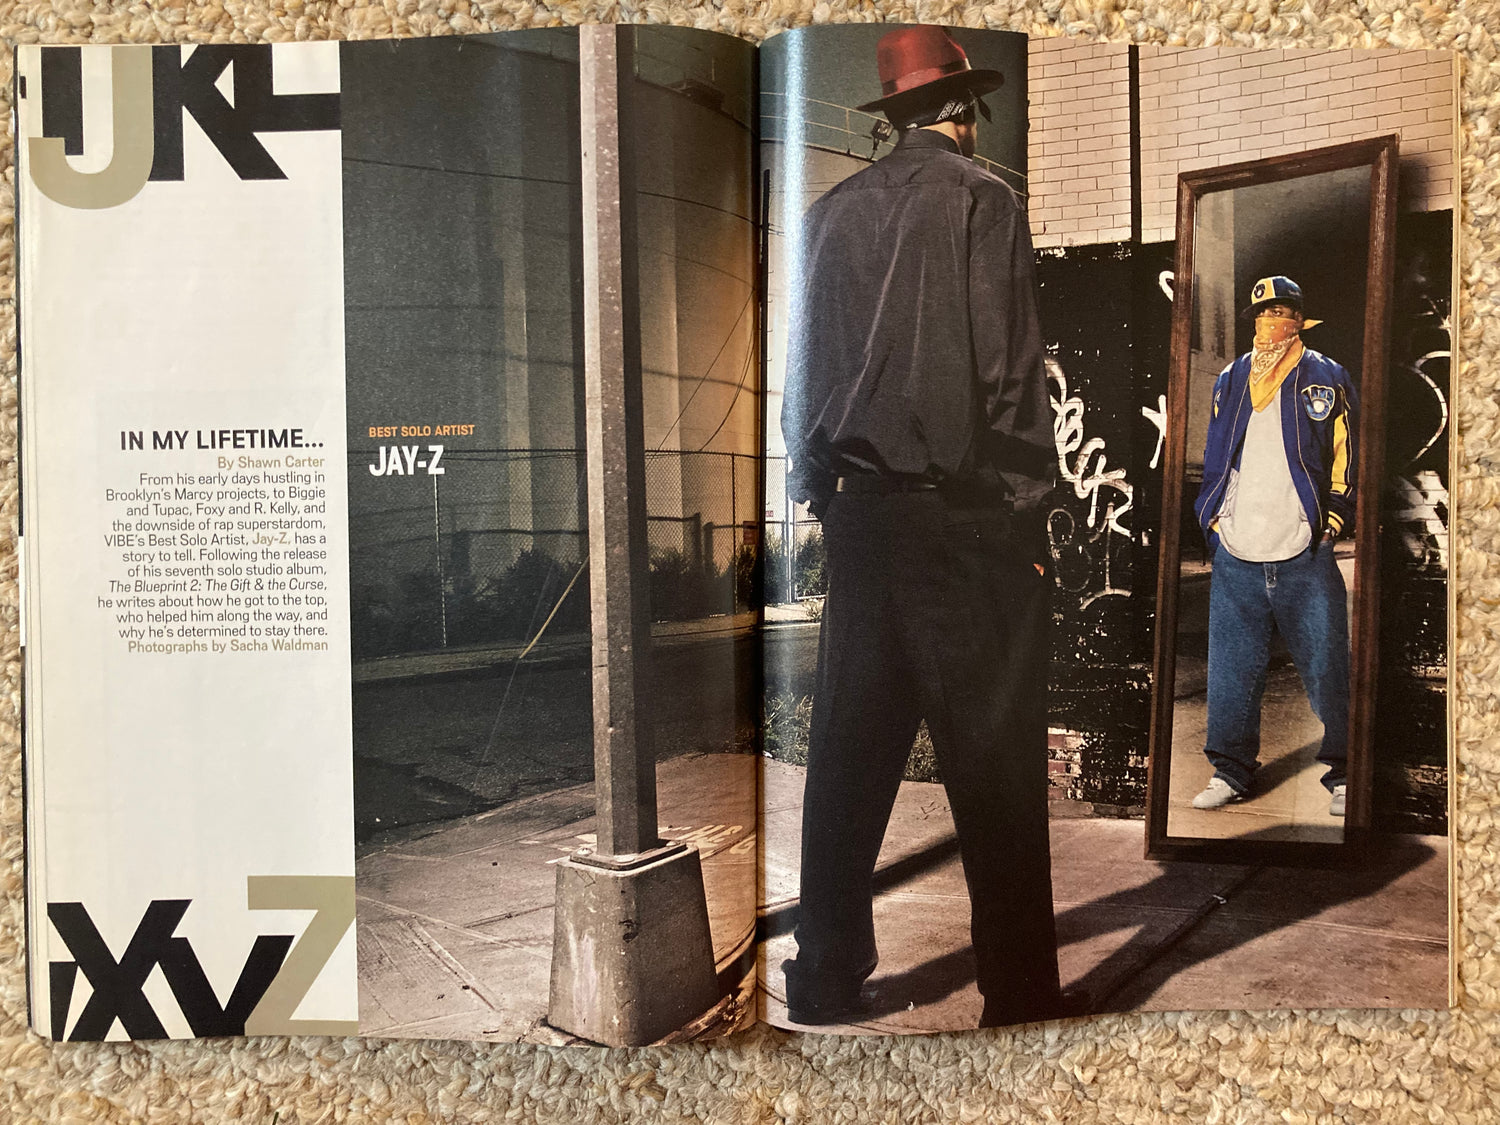 Vibe Magazine January 2003 Jay-Z - MoSneaks Shop Online